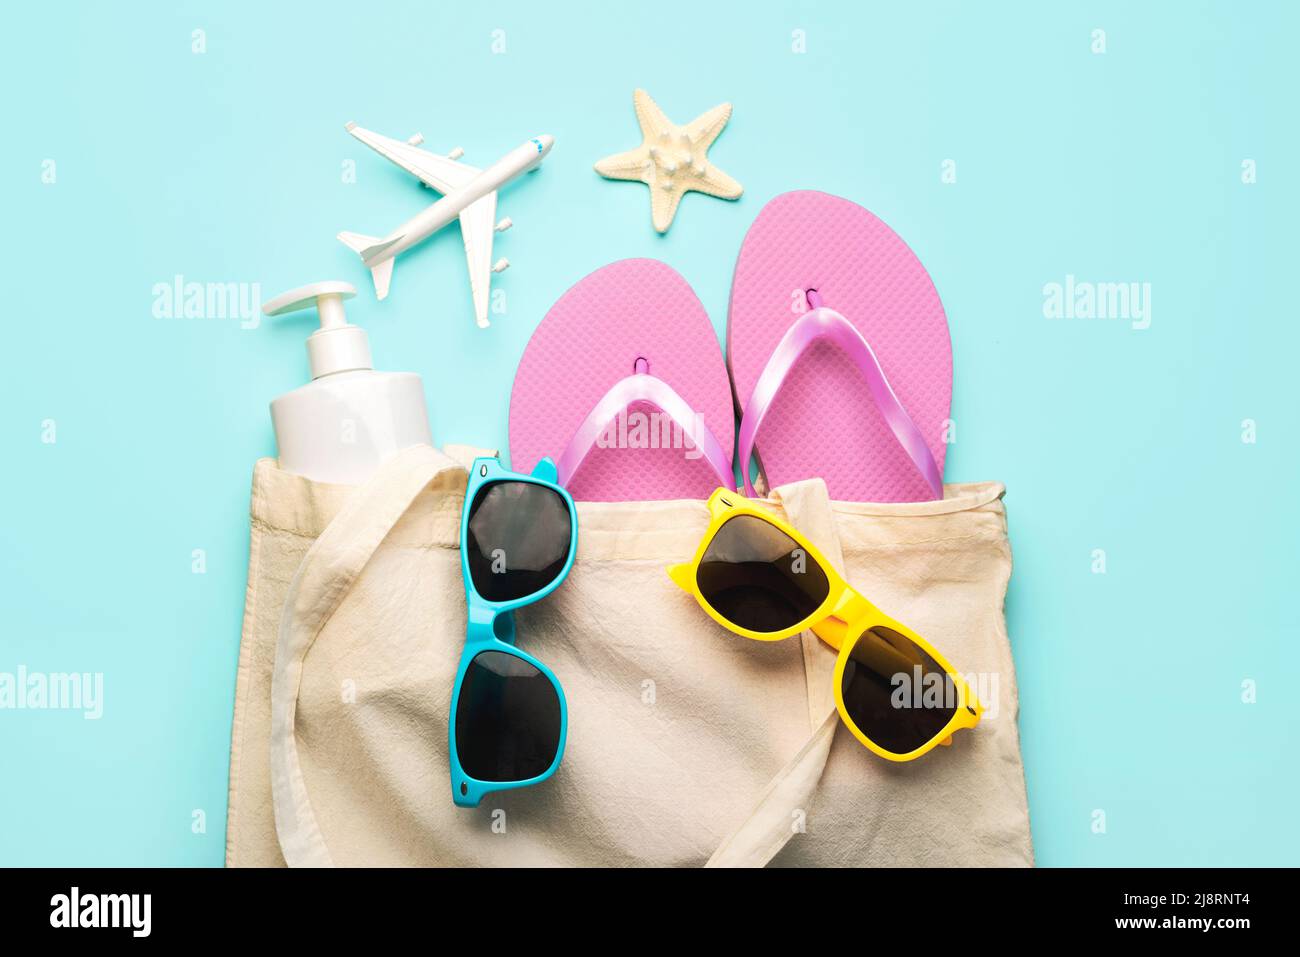 Estate vacanza Concept.Top vista della borsa da spiaggia con infradito, occhiali da sole, crema solare, aeroplano e stelle marine su sfondo blu Foto Stock